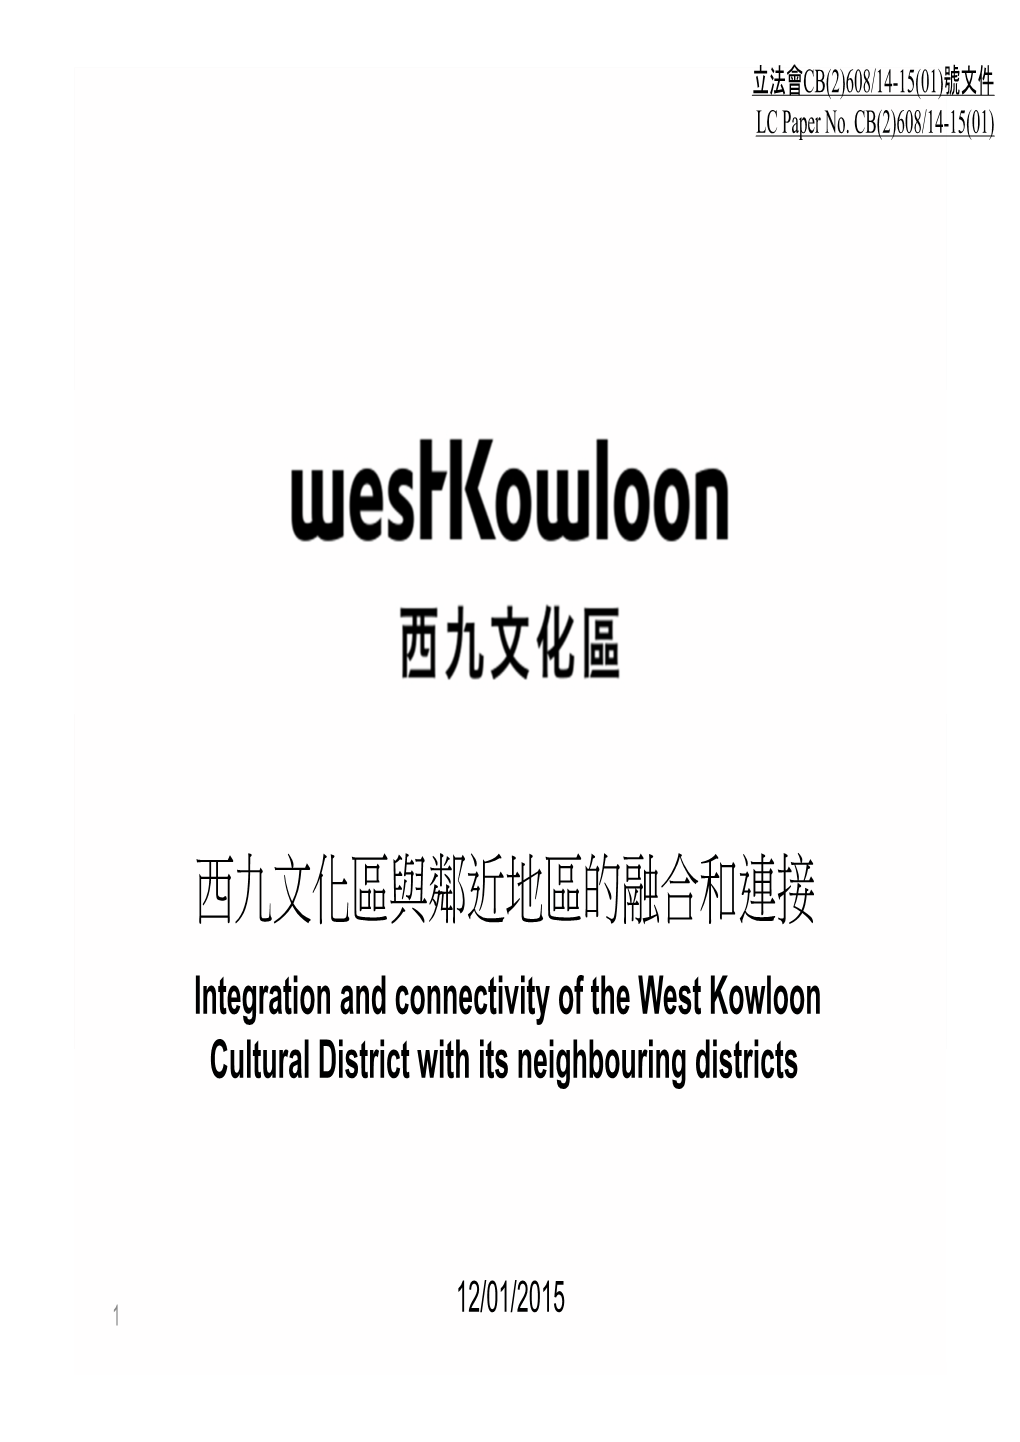 西九文化區與鄰近地區的融合和連接 Integration and Connectivity of the West Kowloon Cultural District with Its Neighbouring Districts